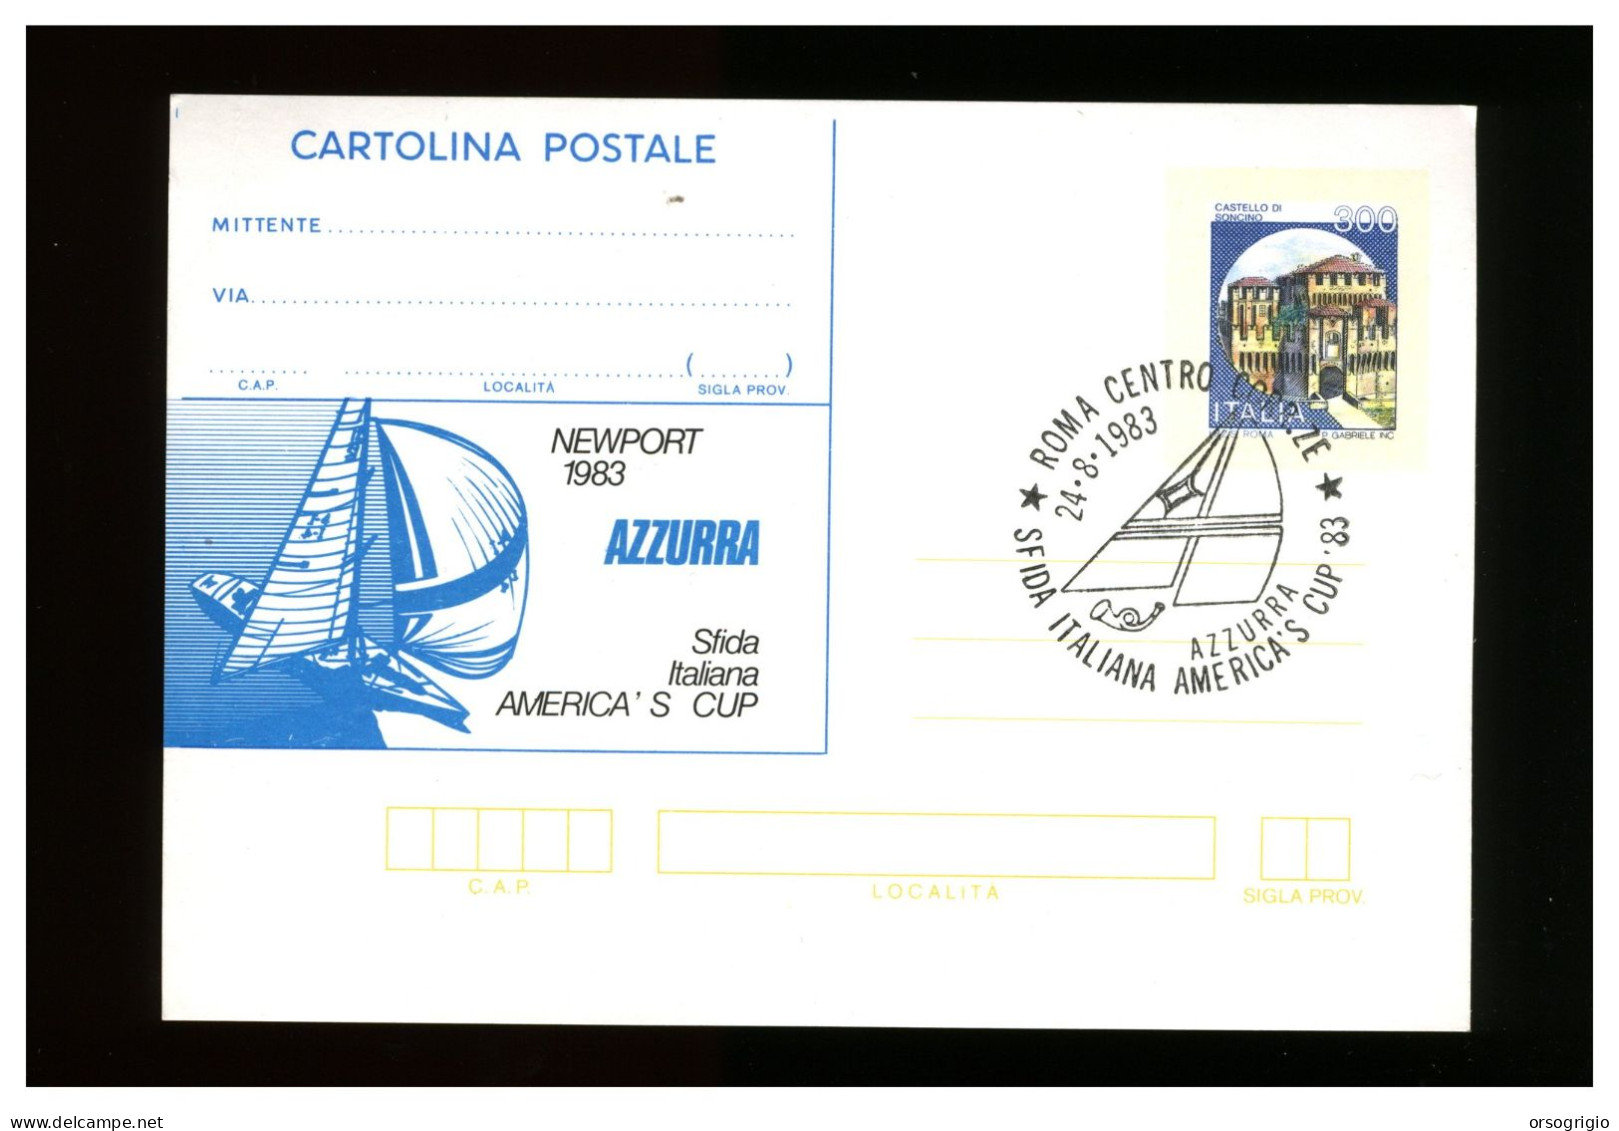 ITALIA - 1983 - AZZURRA - SFIDA ITALIANA AMERICA'S CUP - Sailing